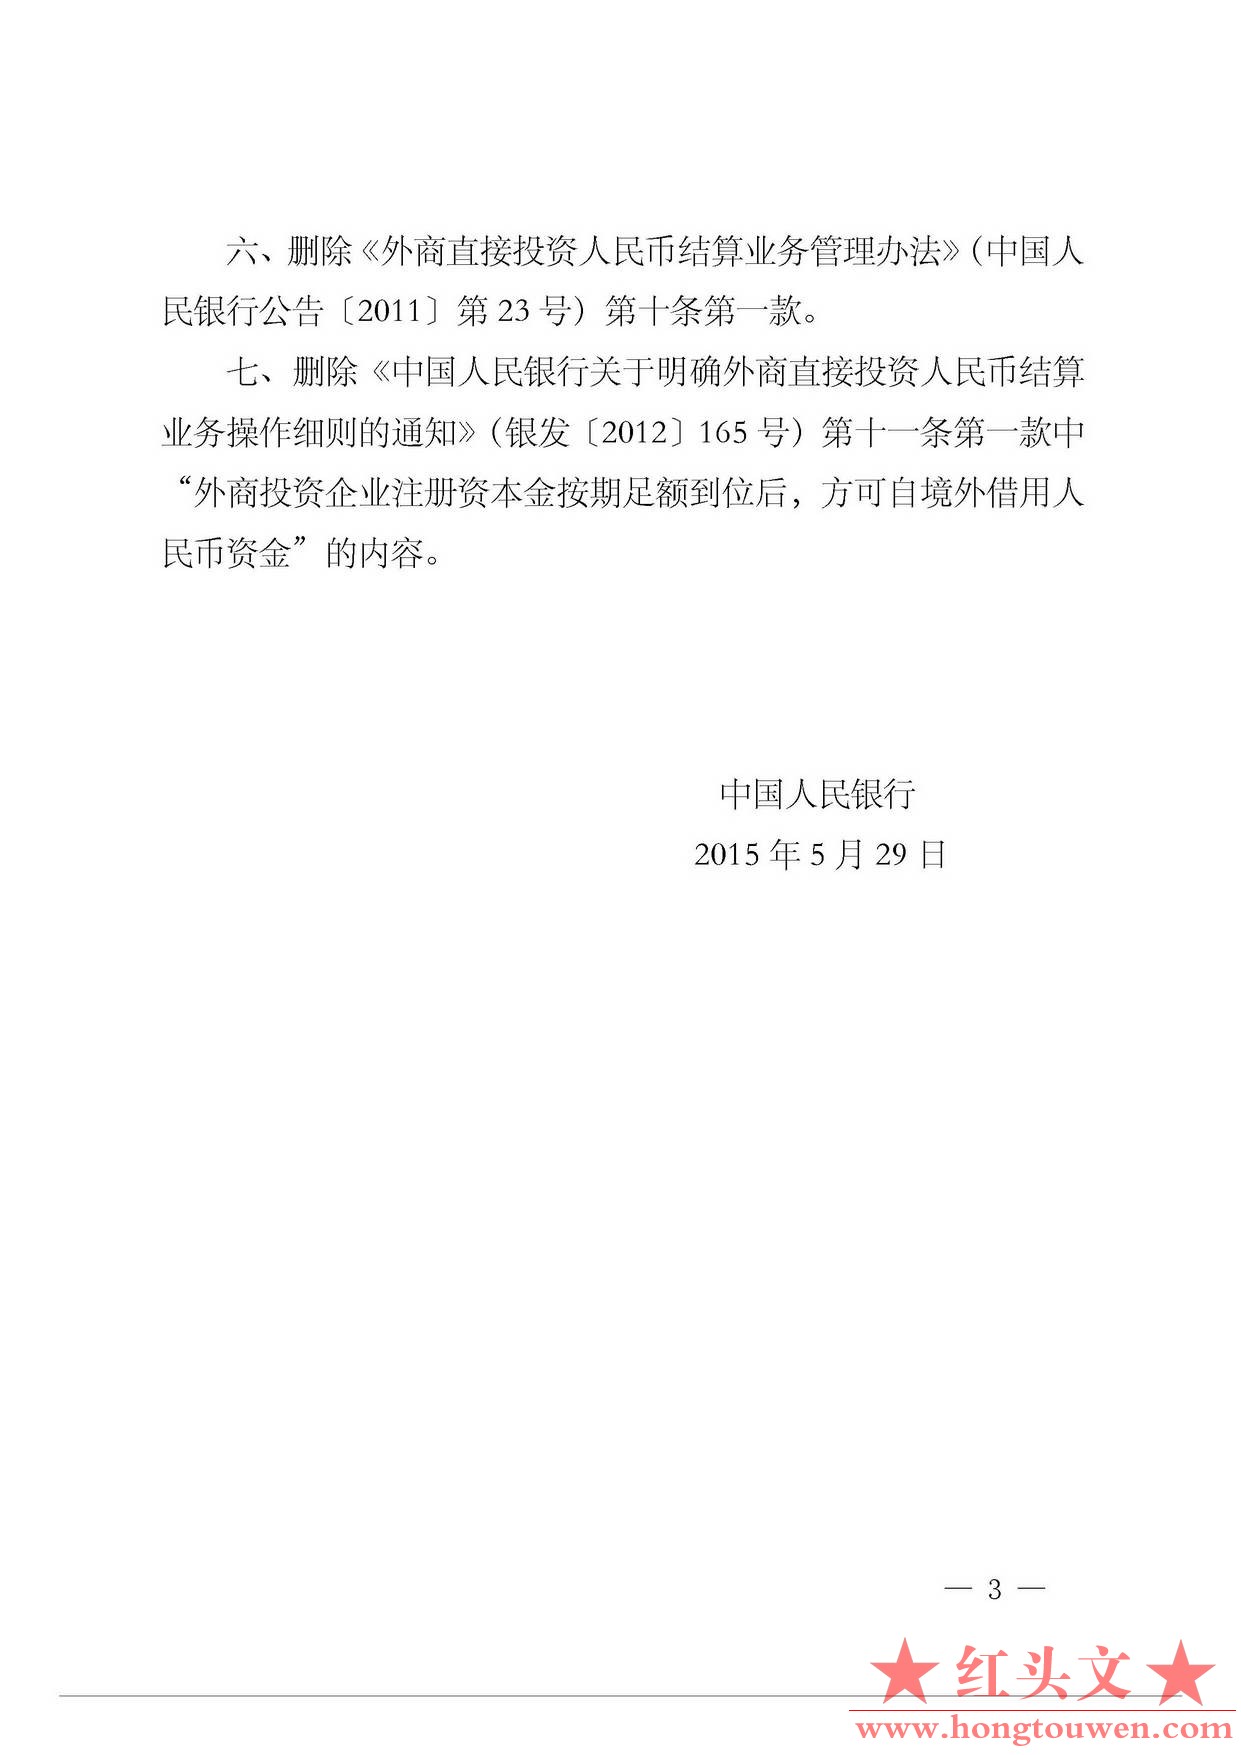 中国人民银行公告[2015]12号-发布规章和规范性文件清理结果_页面_3.jpg.jpg